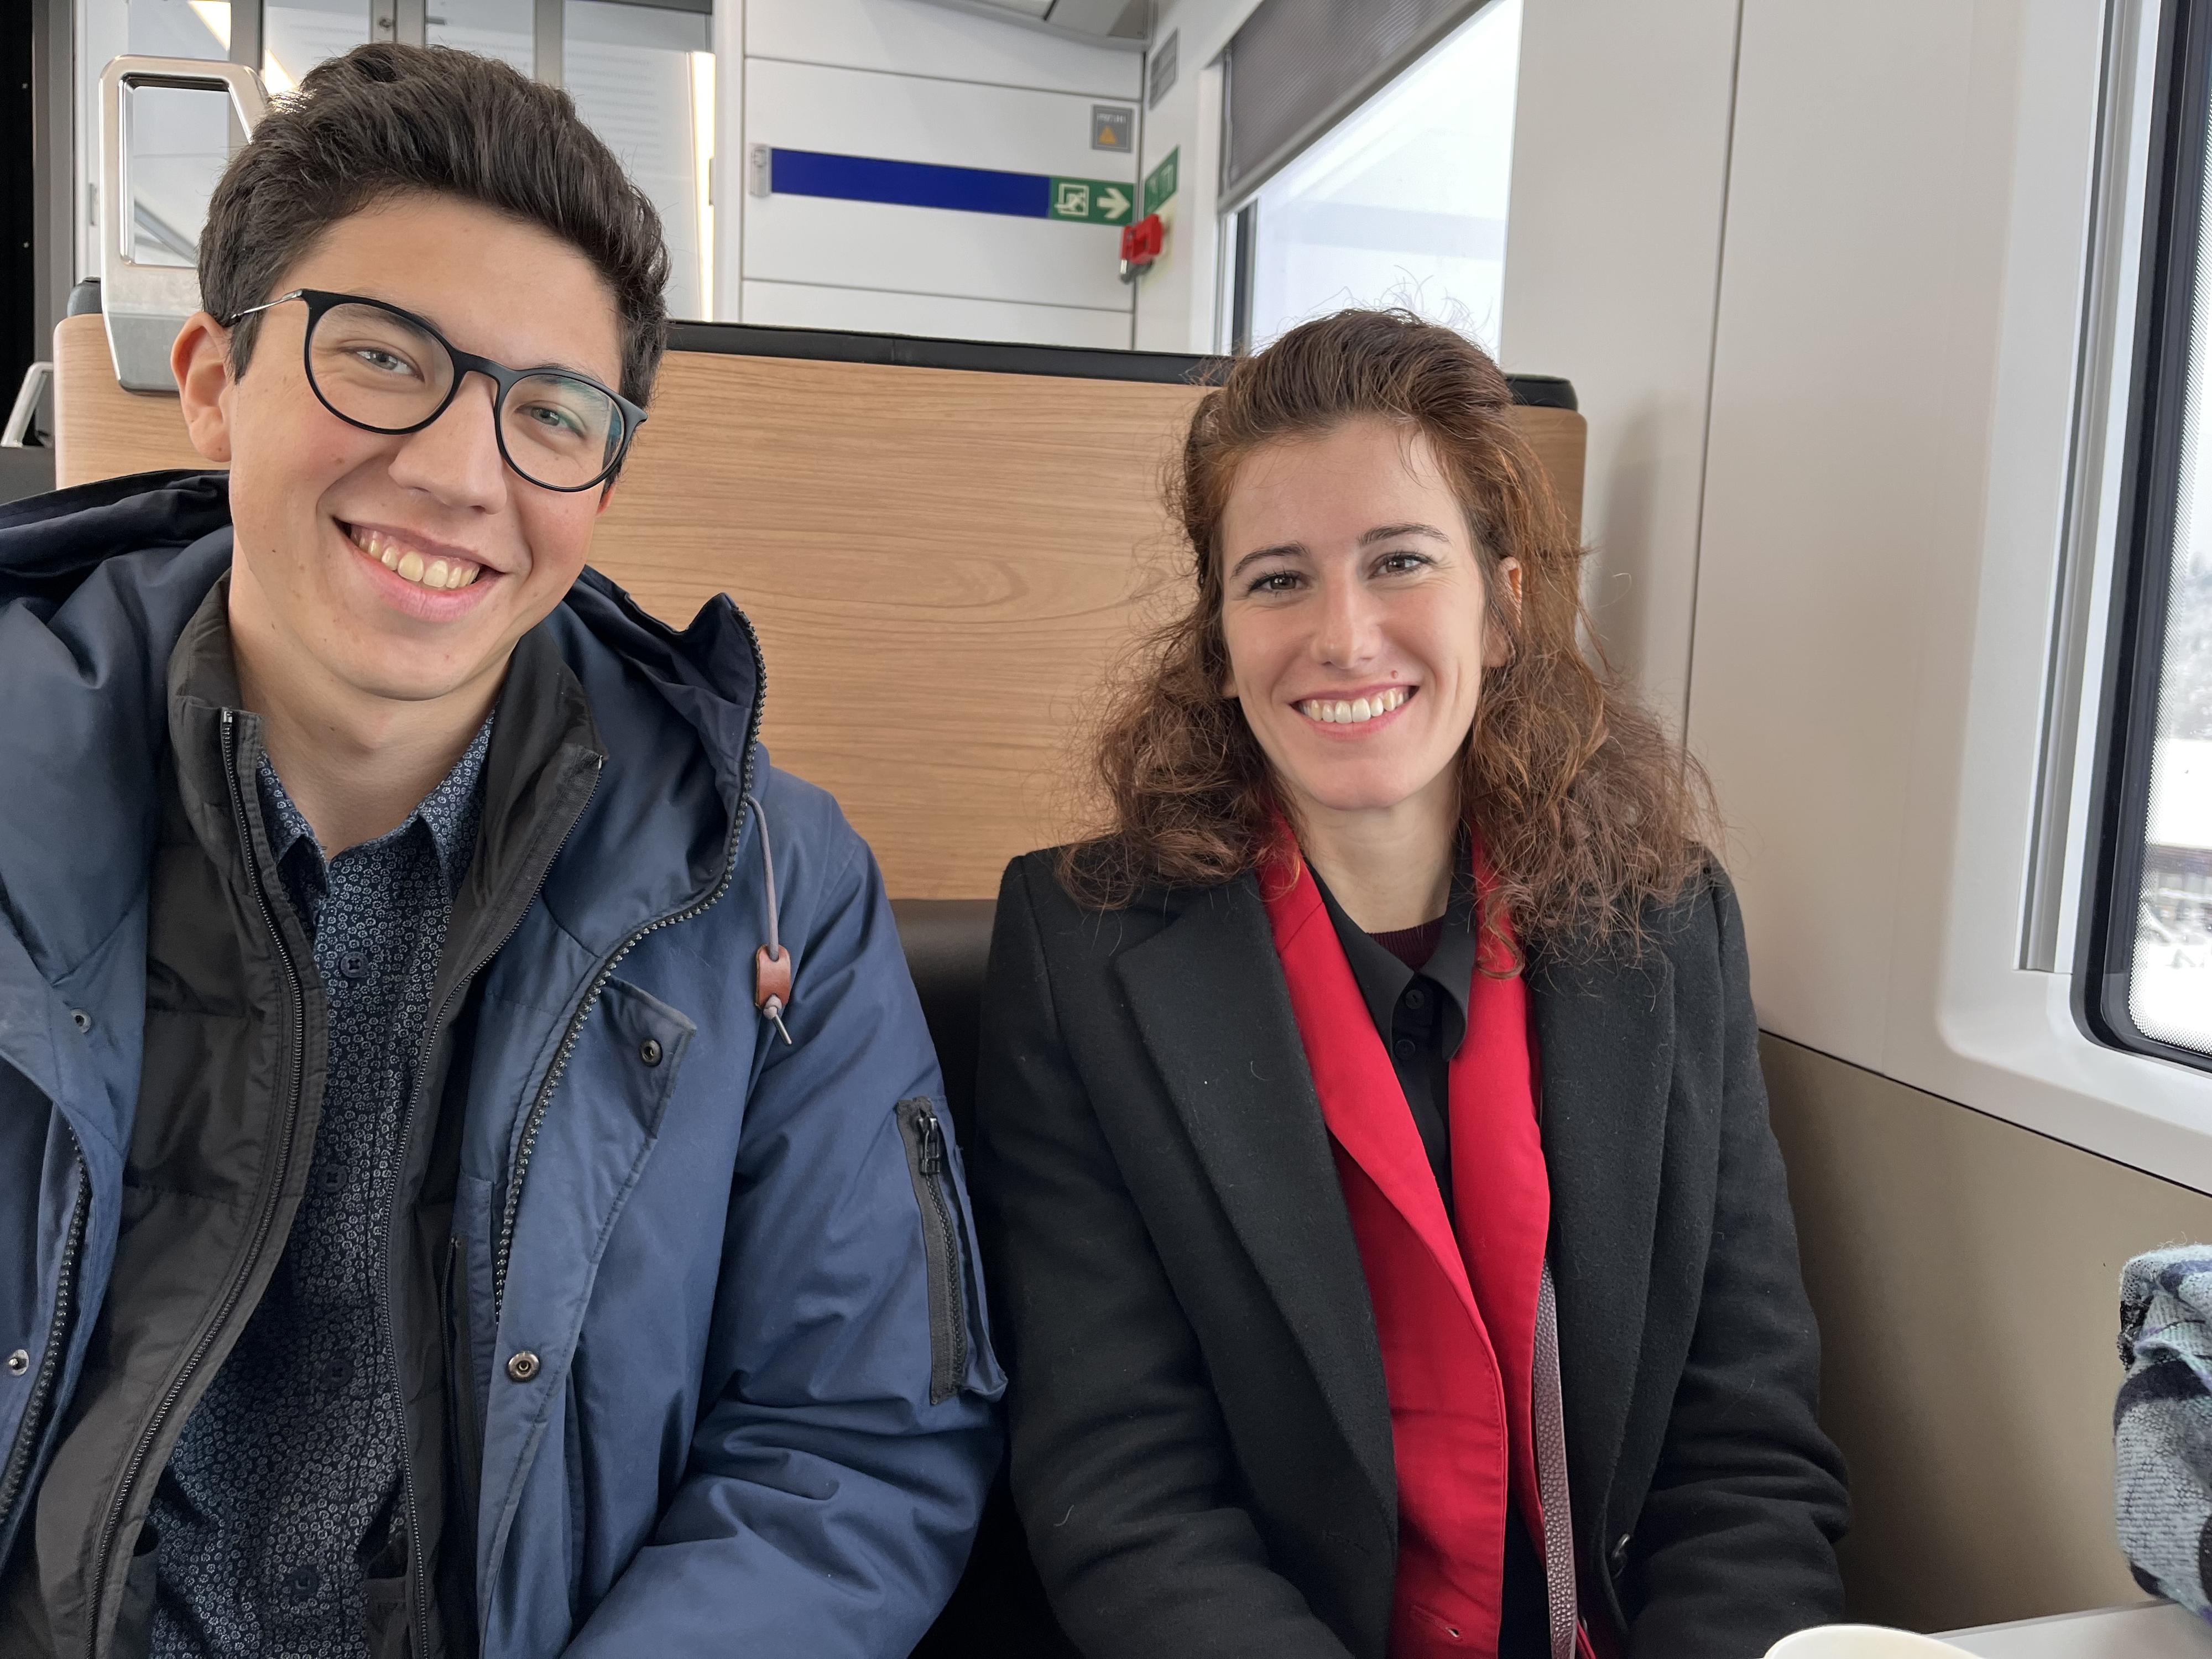 Brenda Tuosto dans le train pour Berne avec son assistant parlementaire. [15 RTS - 15 Minutes]